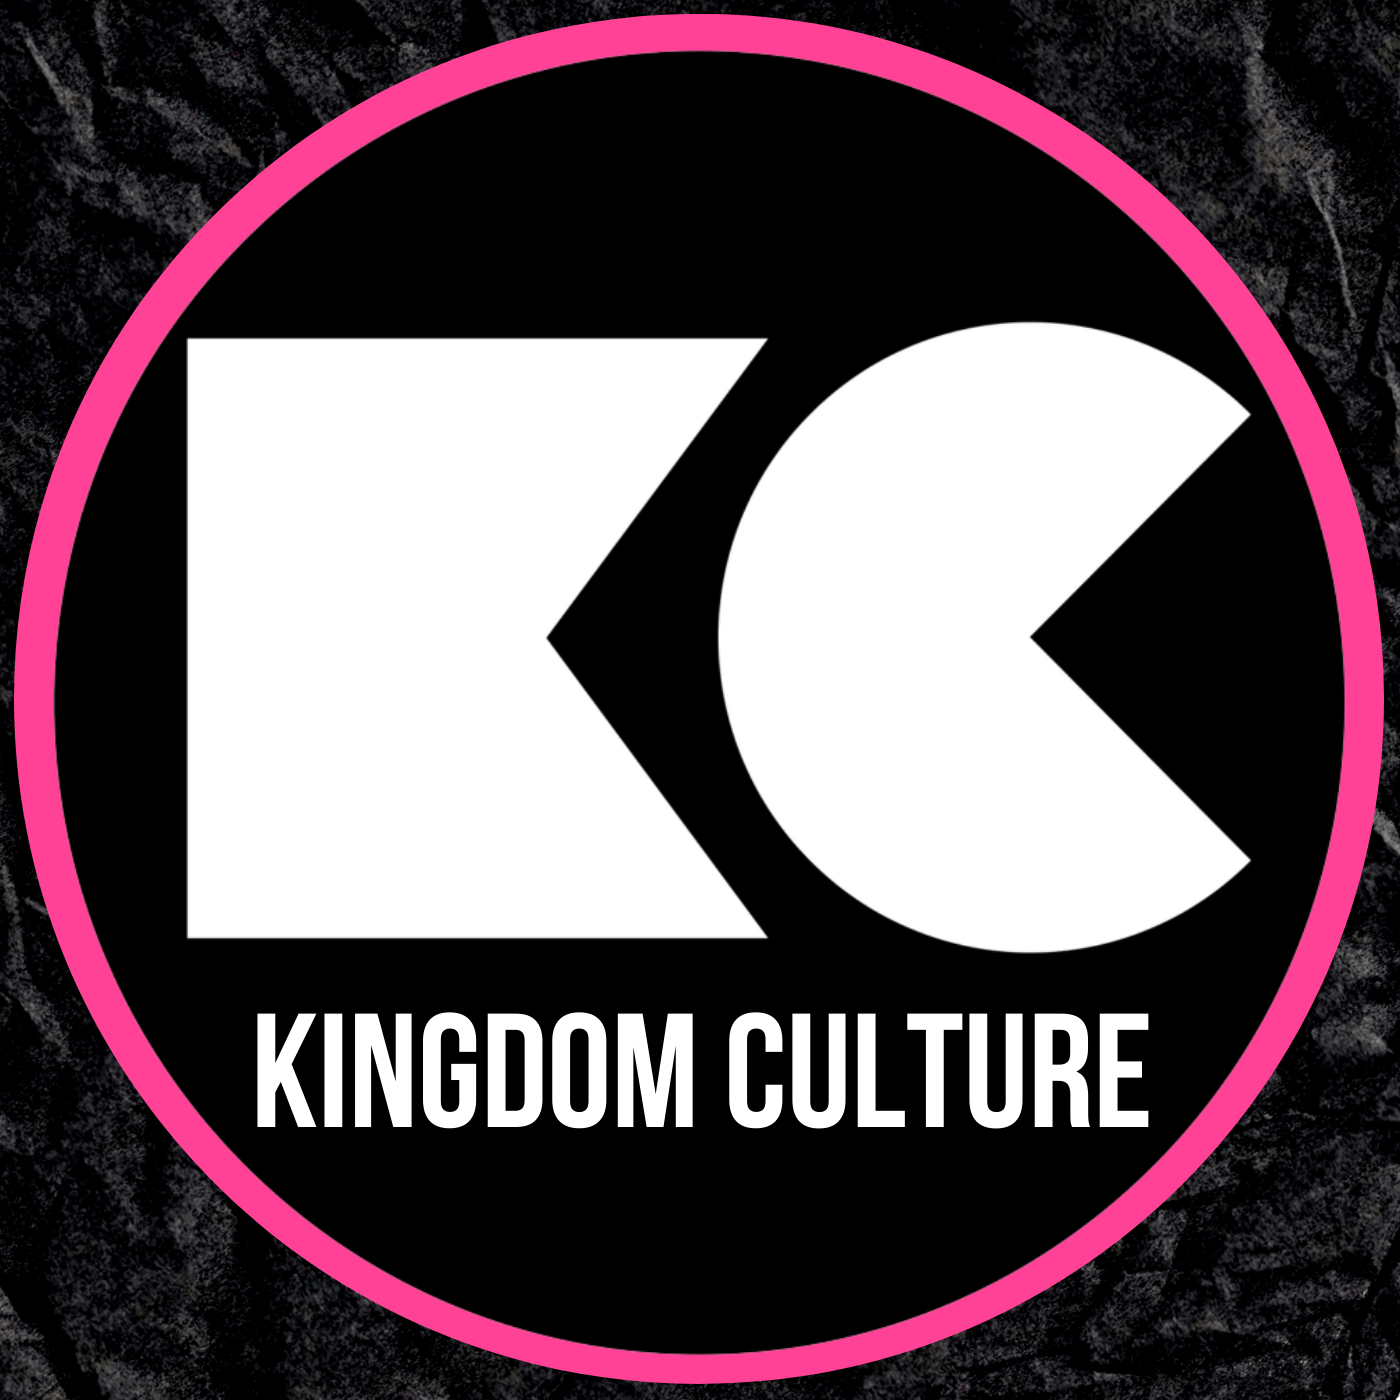 Wij willen een andere cultuur | Kingdom Culture 1200 uur Conferentie 5 februari 2023